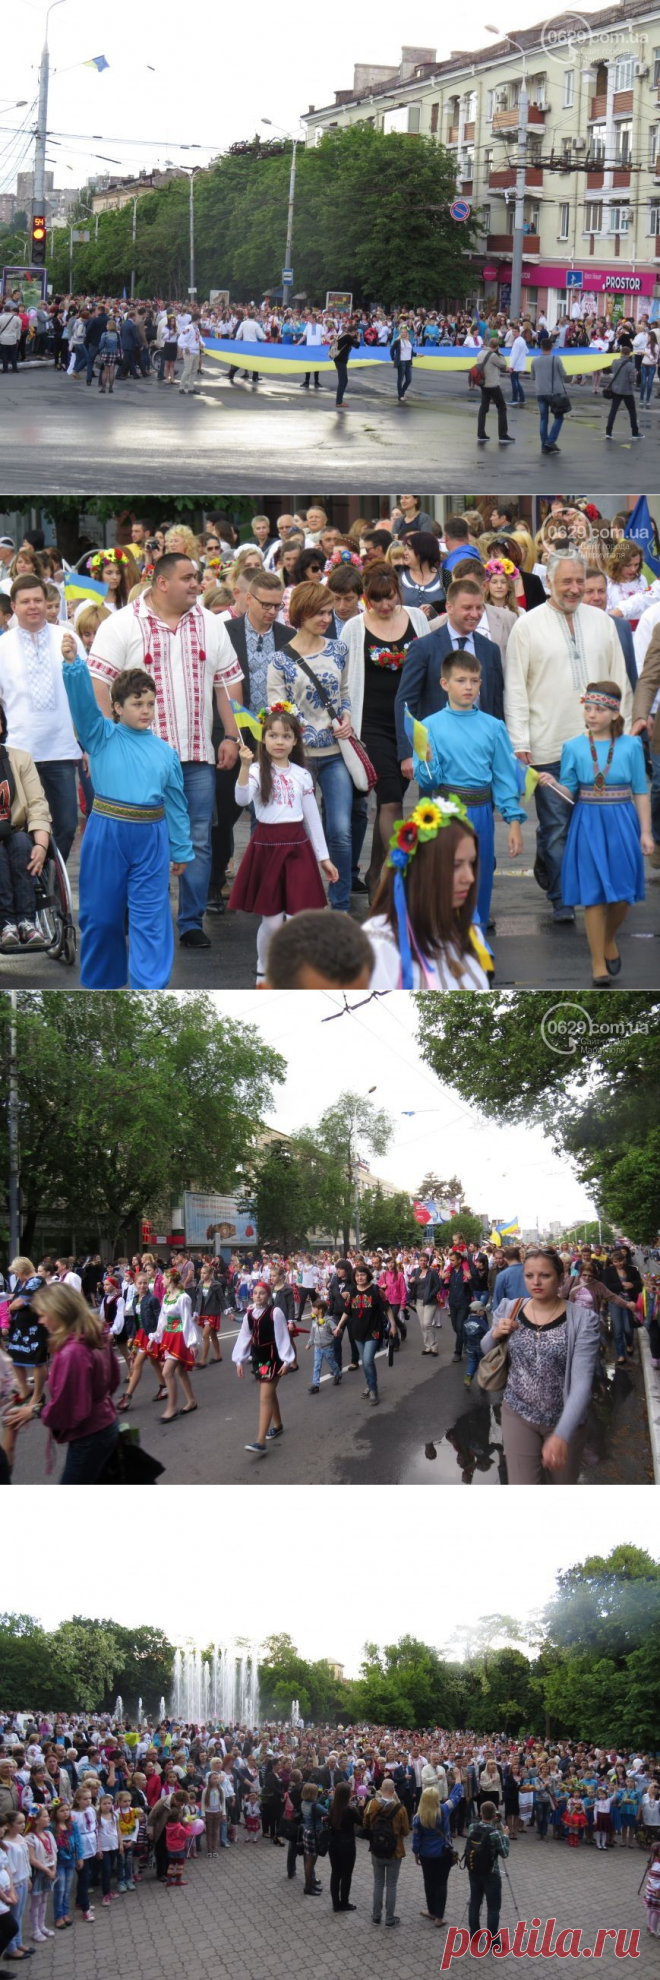 Тысячи мариупольцев одели вышиванки и вышли на парад (ФОТОРЕПОРТАЖ+ВИДЕО) - 0629.com.ua